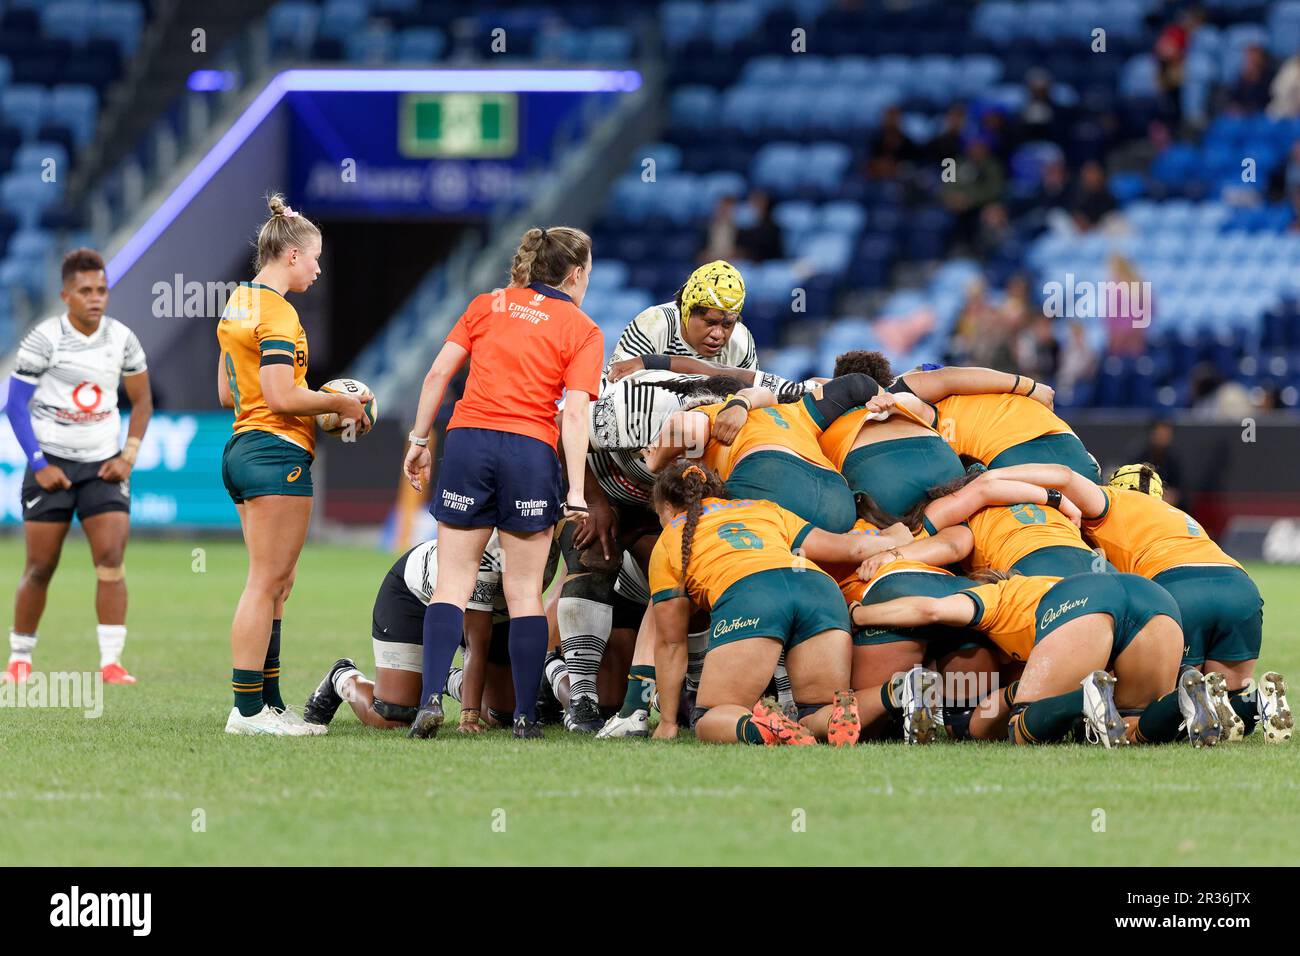 Layne Morgan dei Wallaroos Australiani si prepara ad alimentare il pallone nella mischia durante il Rugby Women's International Match tra Australia e F. Foto Stock